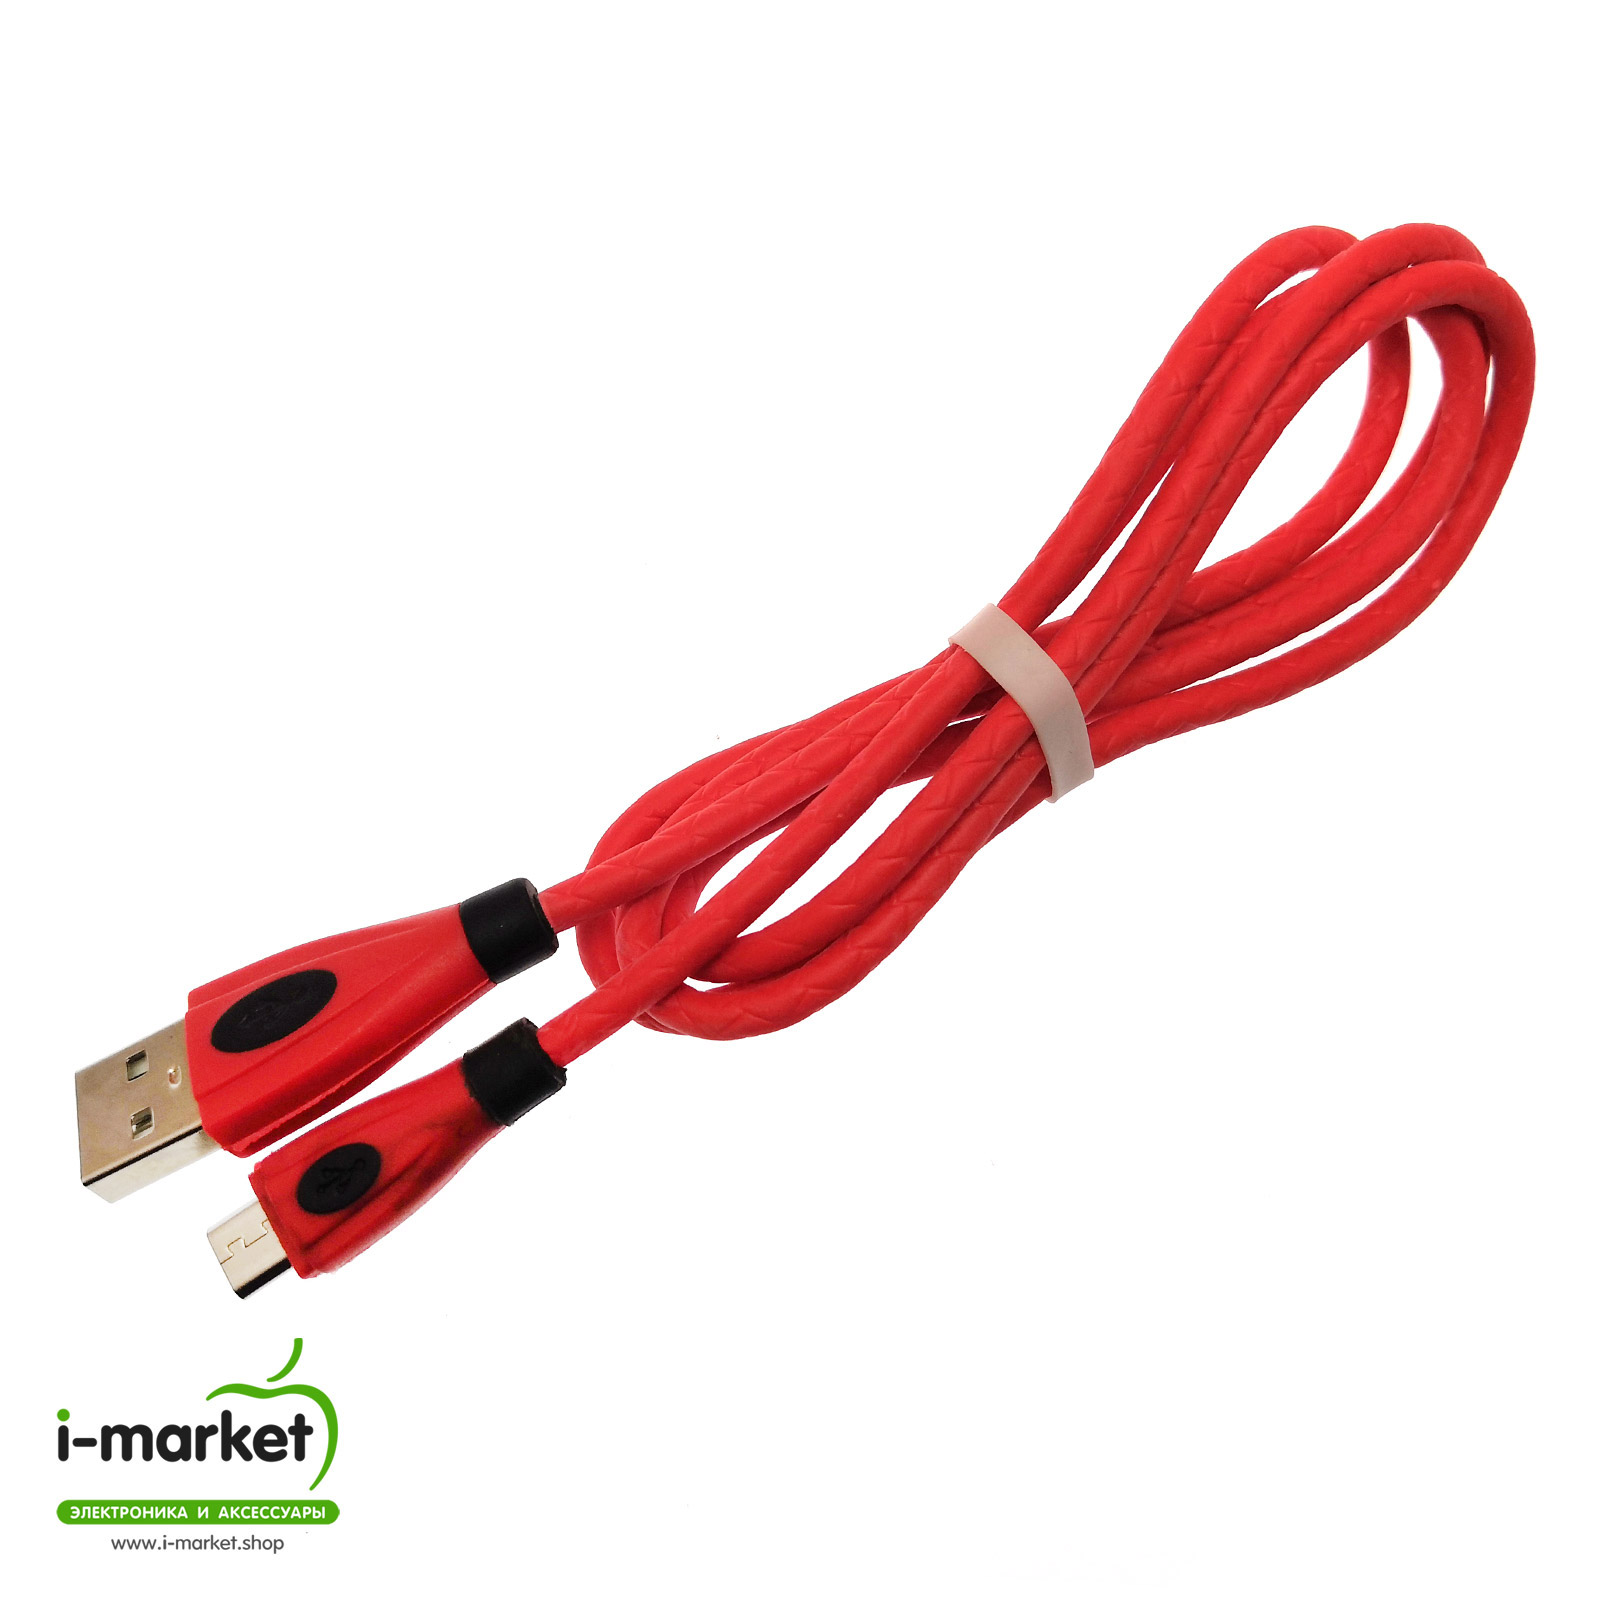 USB Дата кабель Micro USB, силиконовый, текстурированная оплетка, длина 1 метр, цвет красный BLK.